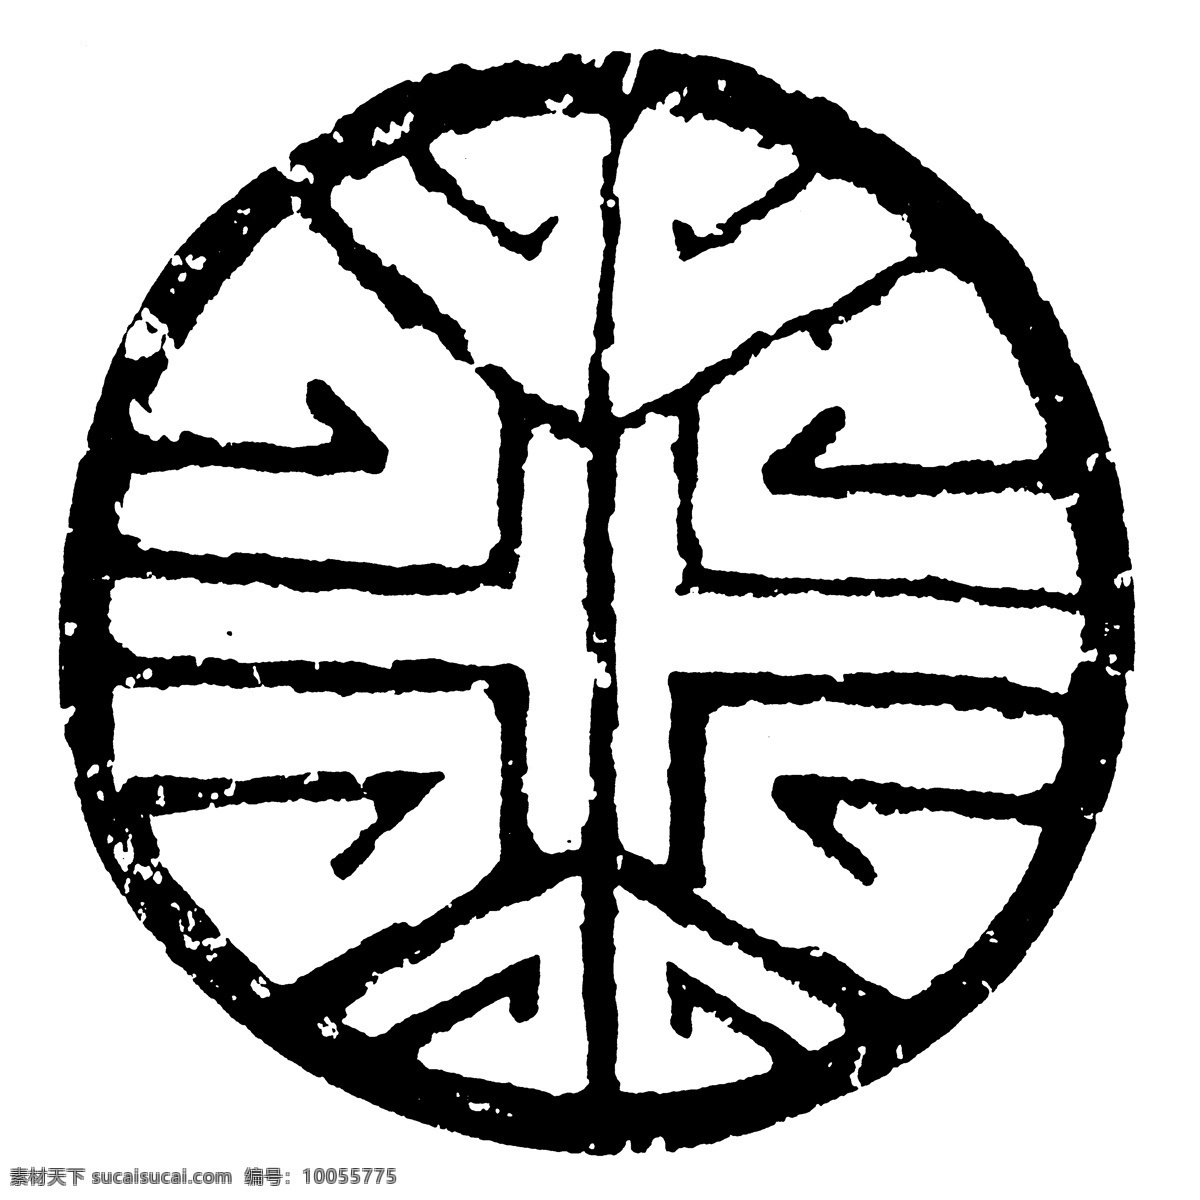 瓦当图案 秦汉时期图案 中国传统图案 图案096 图案 设计素材 瓦当纹饰 装饰图案 书画美术 白色